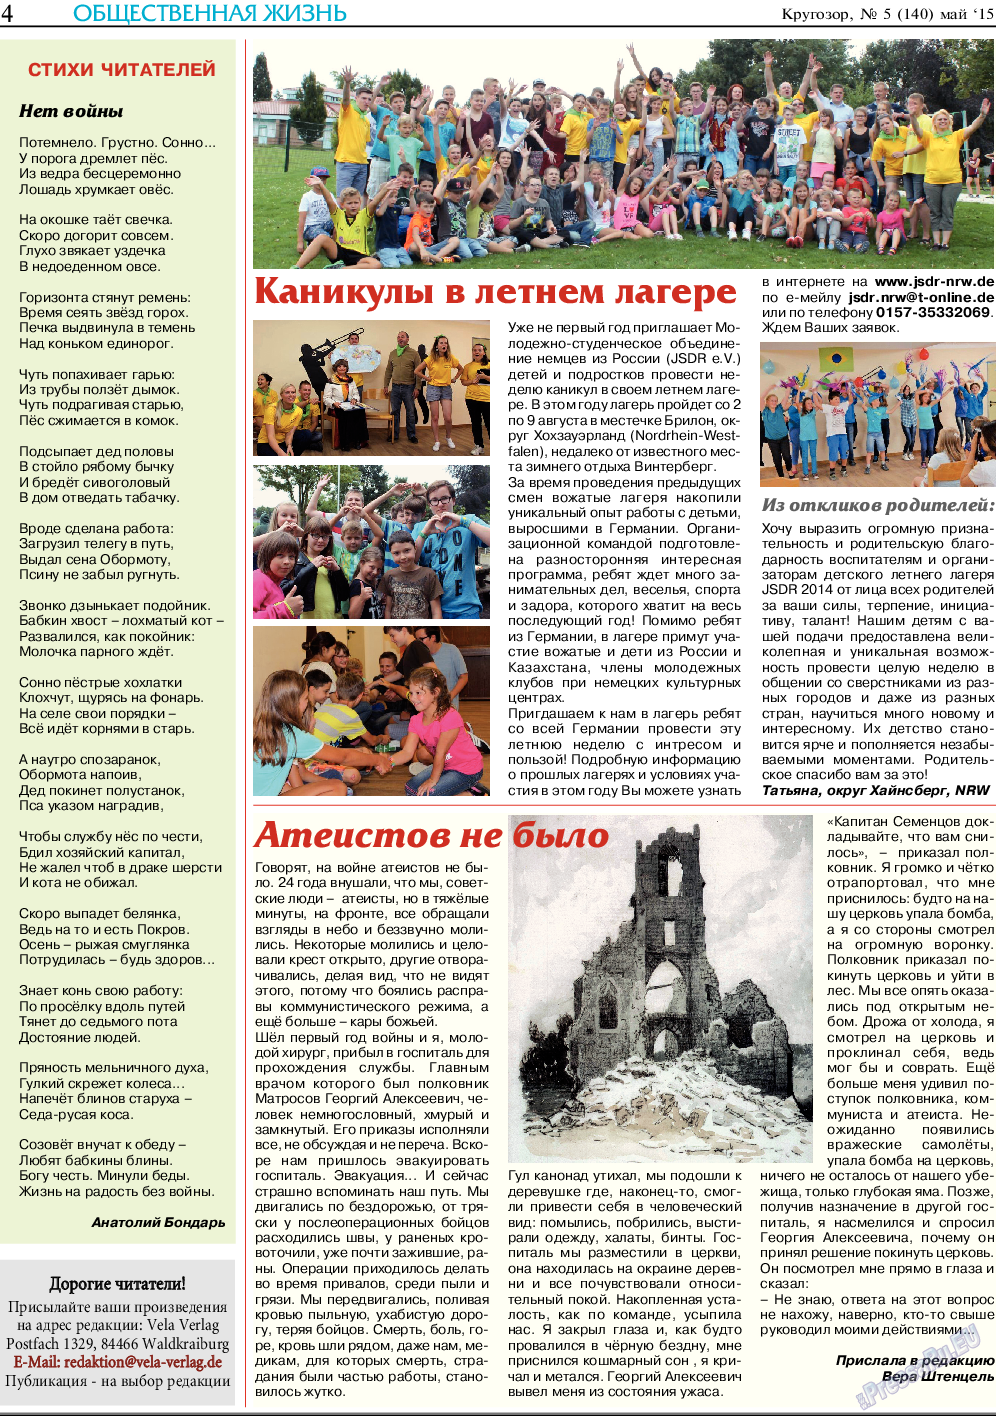 Кругозор, газета. 2015 №5 стр.4